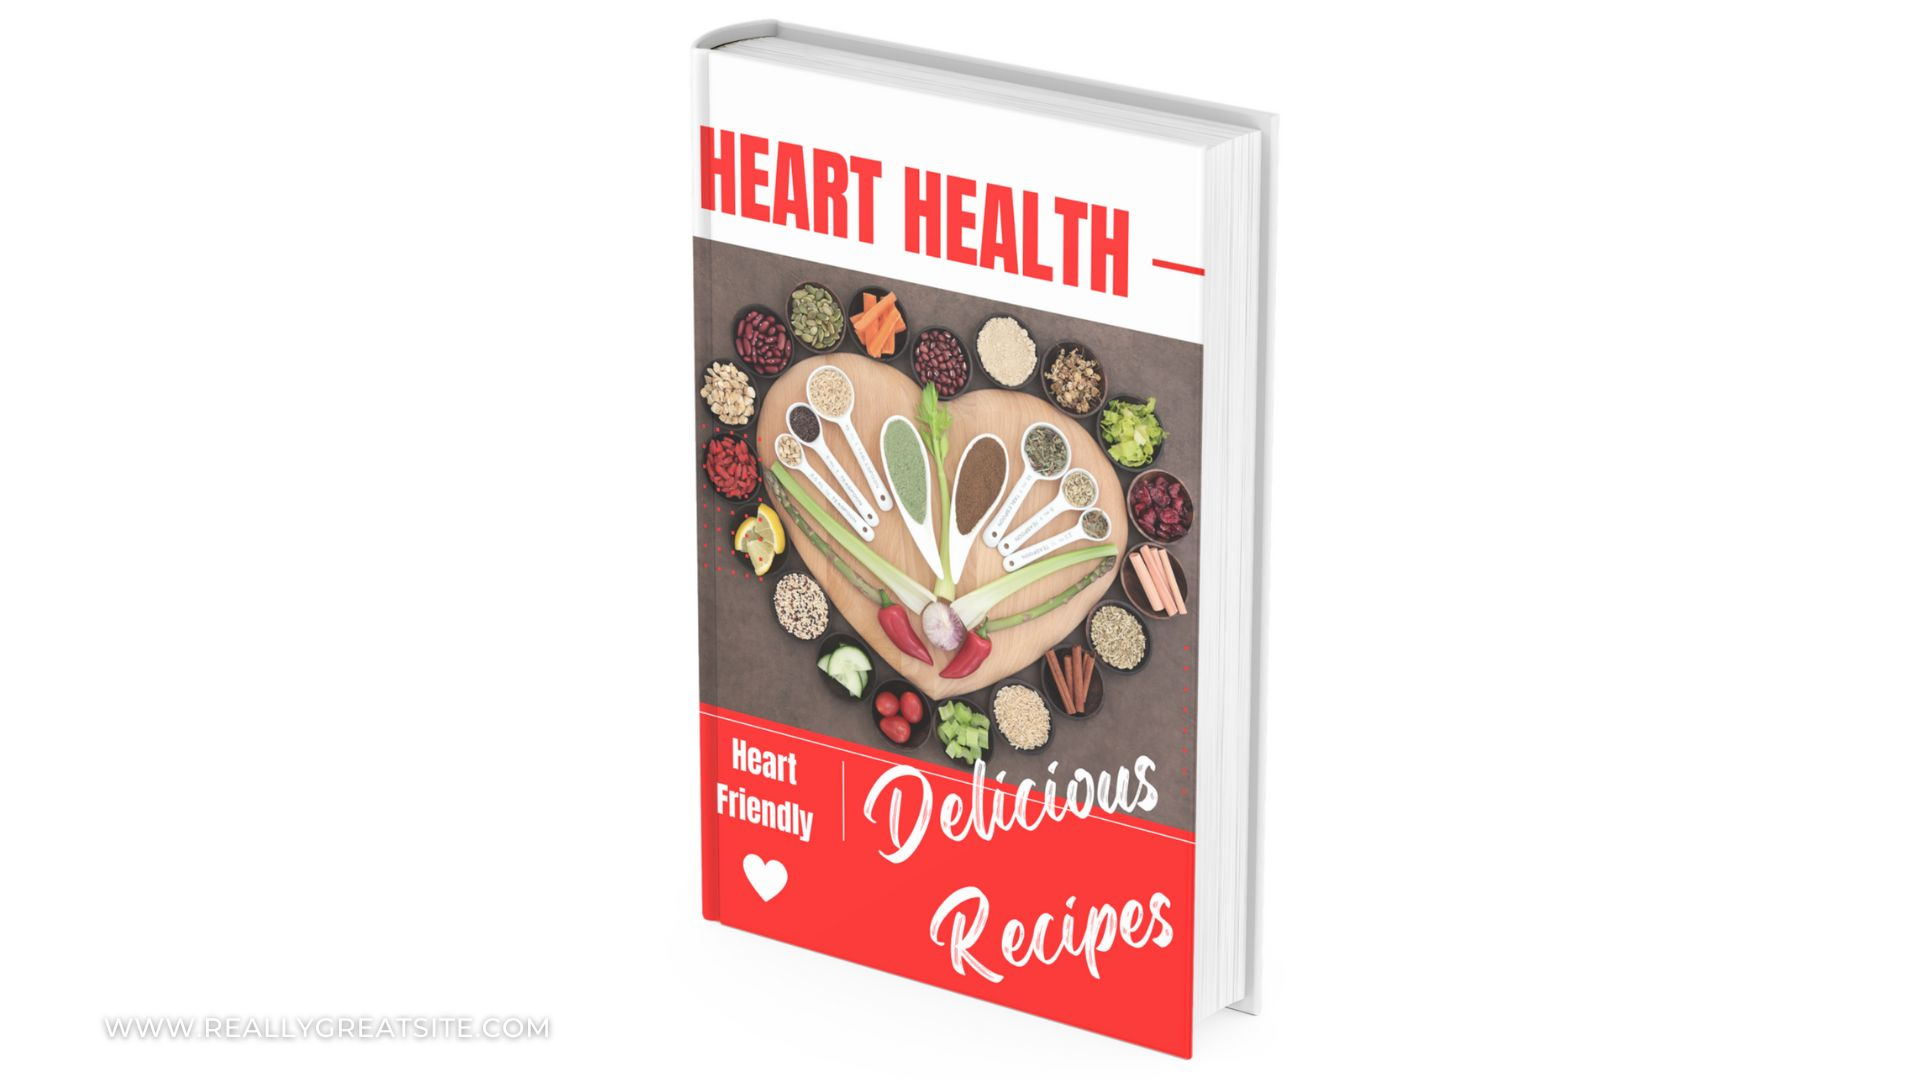 Heart Health Recipes